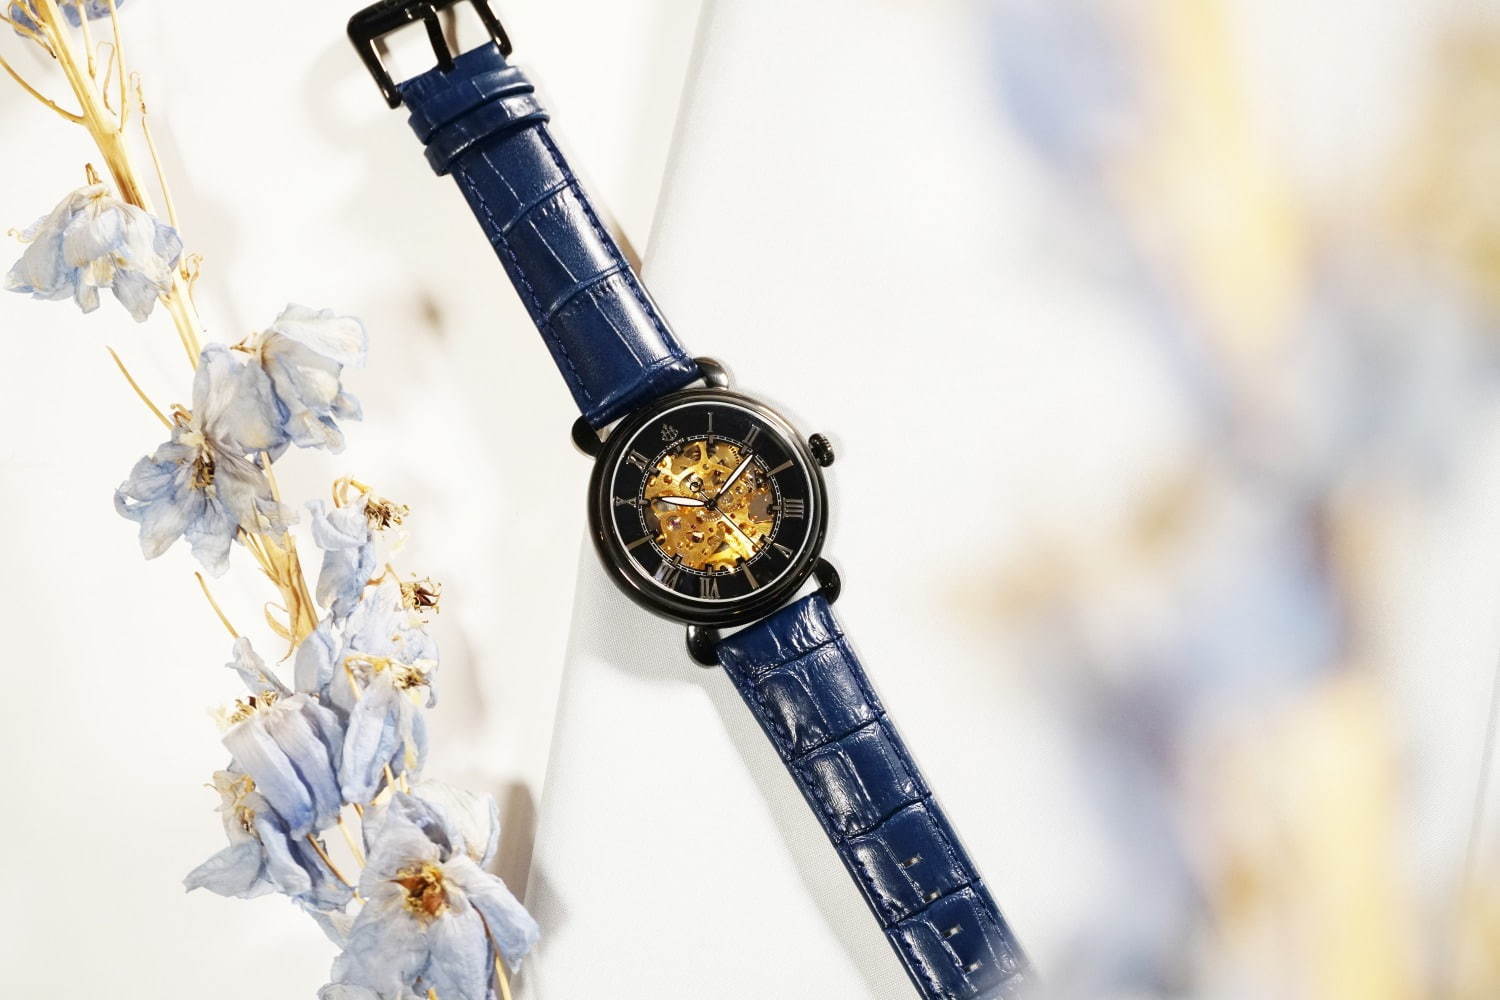 ロバー 時計内部が見える ドーム型スケルトン腕時計 パリ名所にちなんだカラーで 旅行気分 ファッションプレス